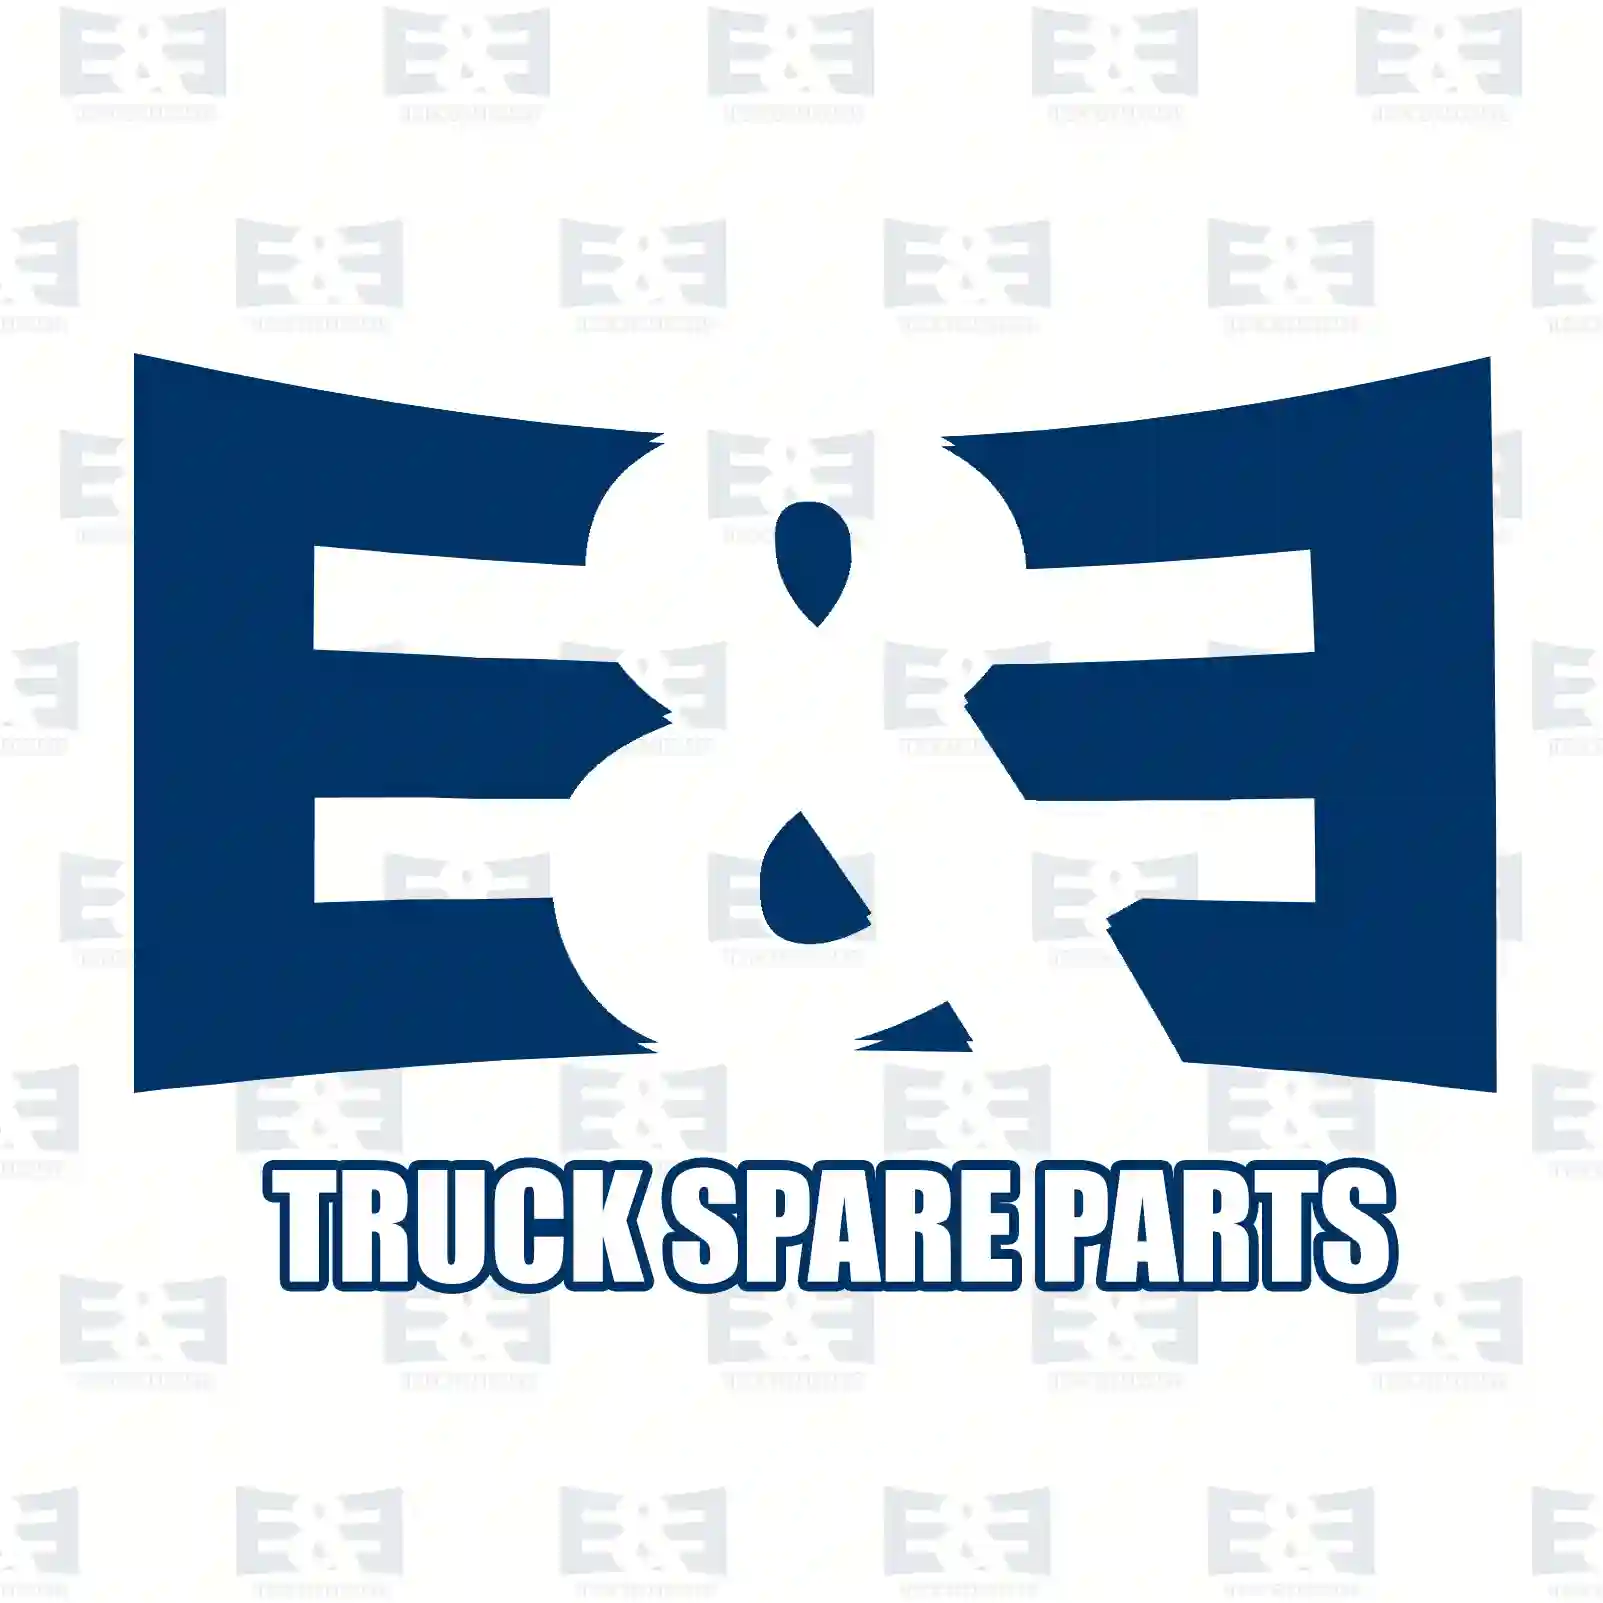 Spider pinion, 2E2270144, 7401522346, 7420503268, 1522346, 20503268 ||  2E2270144 E&E Truck Spare Parts | Truck Spare Parts, Auotomotive Spare Parts Spider pinion, 2E2270144, 7401522346, 7420503268, 1522346, 20503268 ||  2E2270144 E&E Truck Spare Parts | Truck Spare Parts, Auotomotive Spare Parts